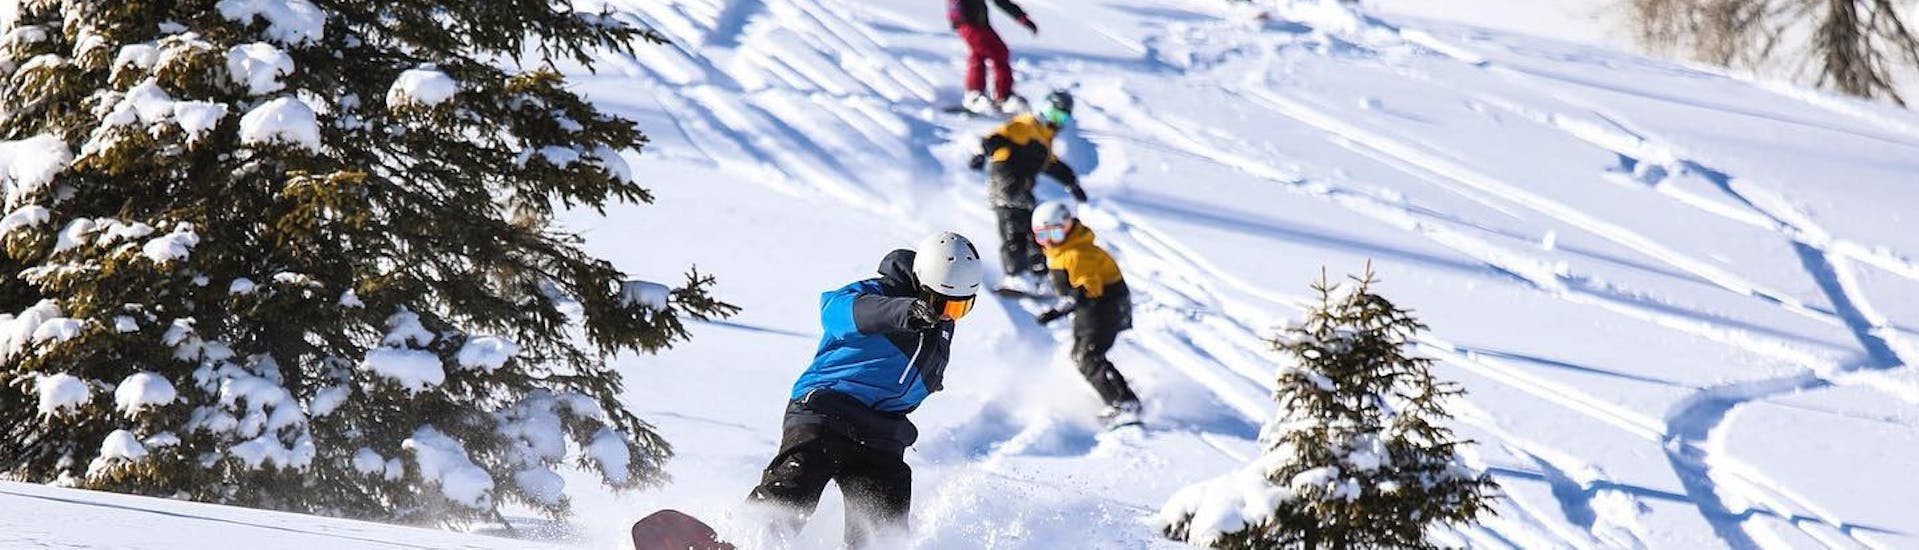 Un gruppo di ragazzi fa snowboard sulle piste di Madonna di Campiglio durante le Lezioni di snowboard per bambini e adulti di tutti i livelli con Scuola di Snowboard Zebra Madonna di Campiglio.